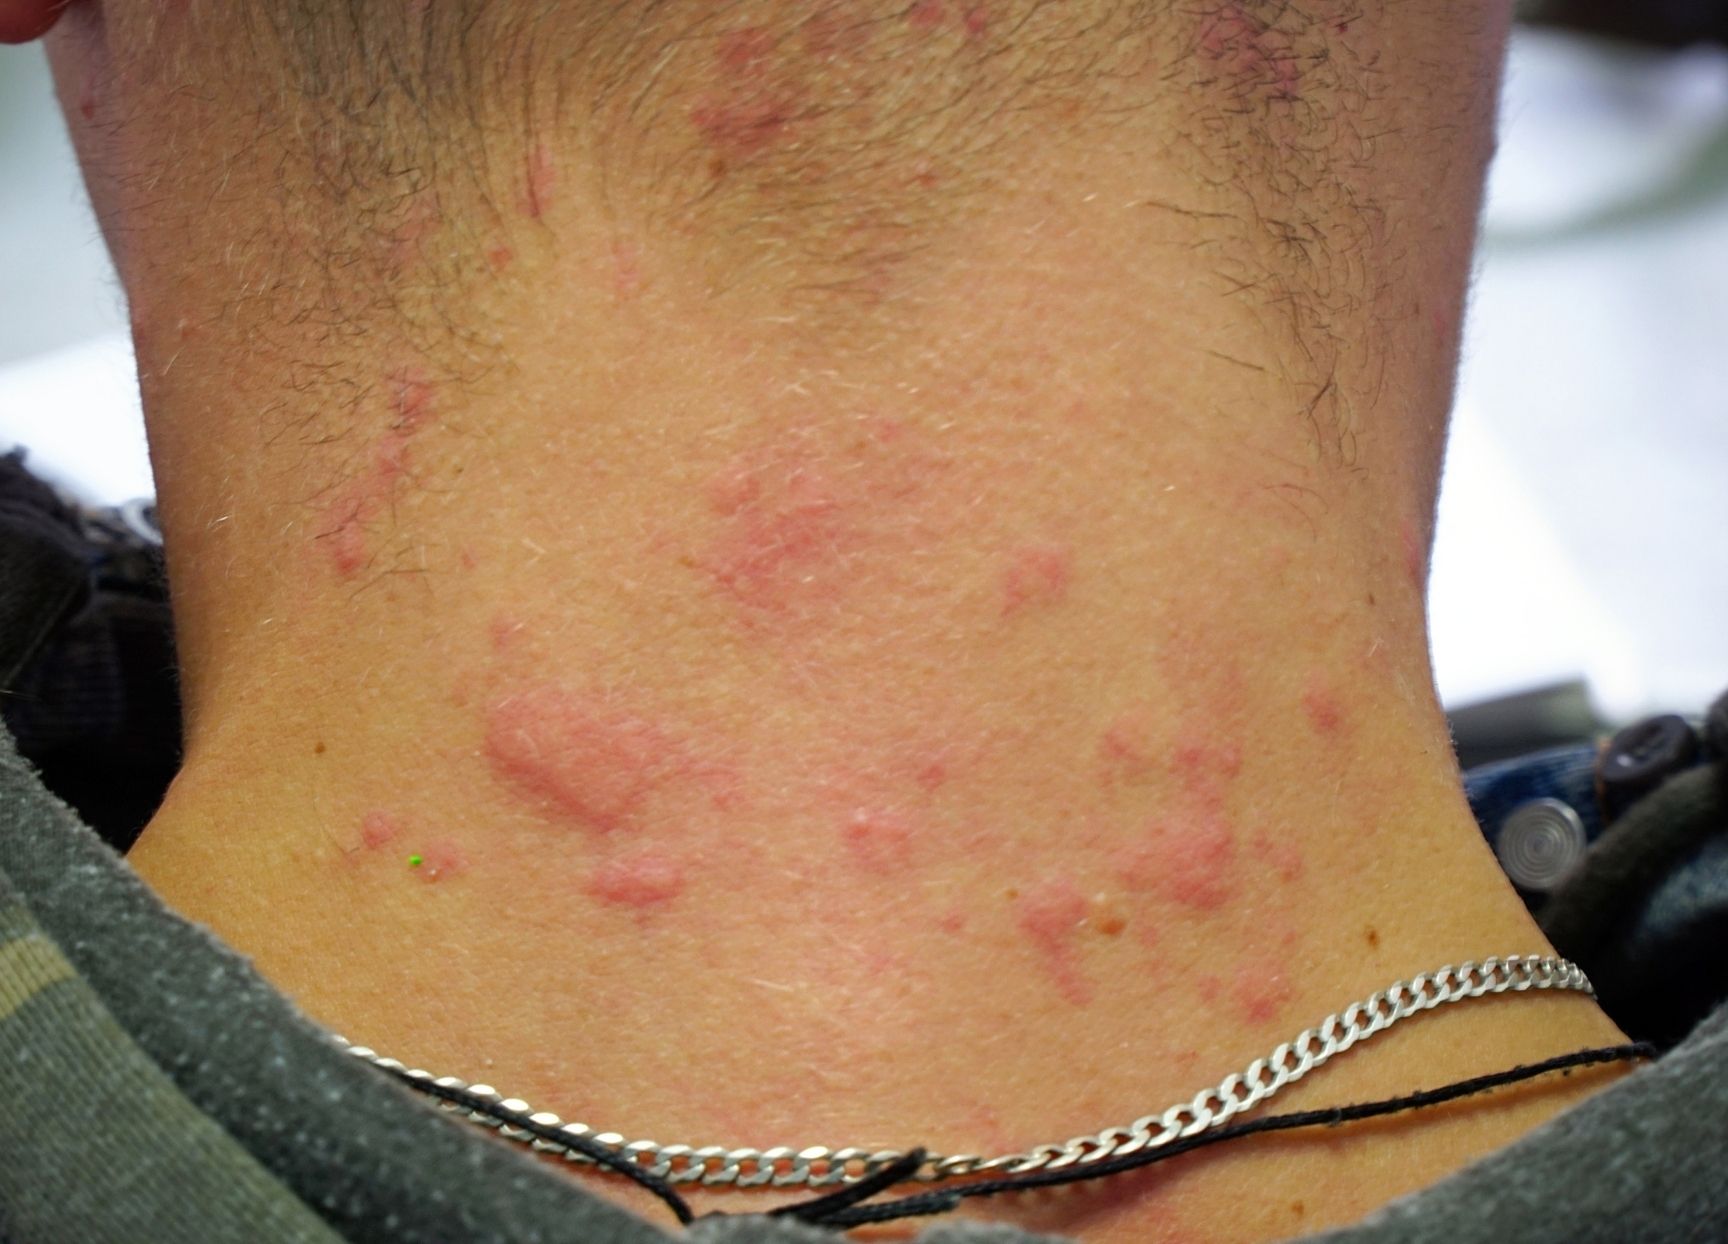 Urticaria (hives)